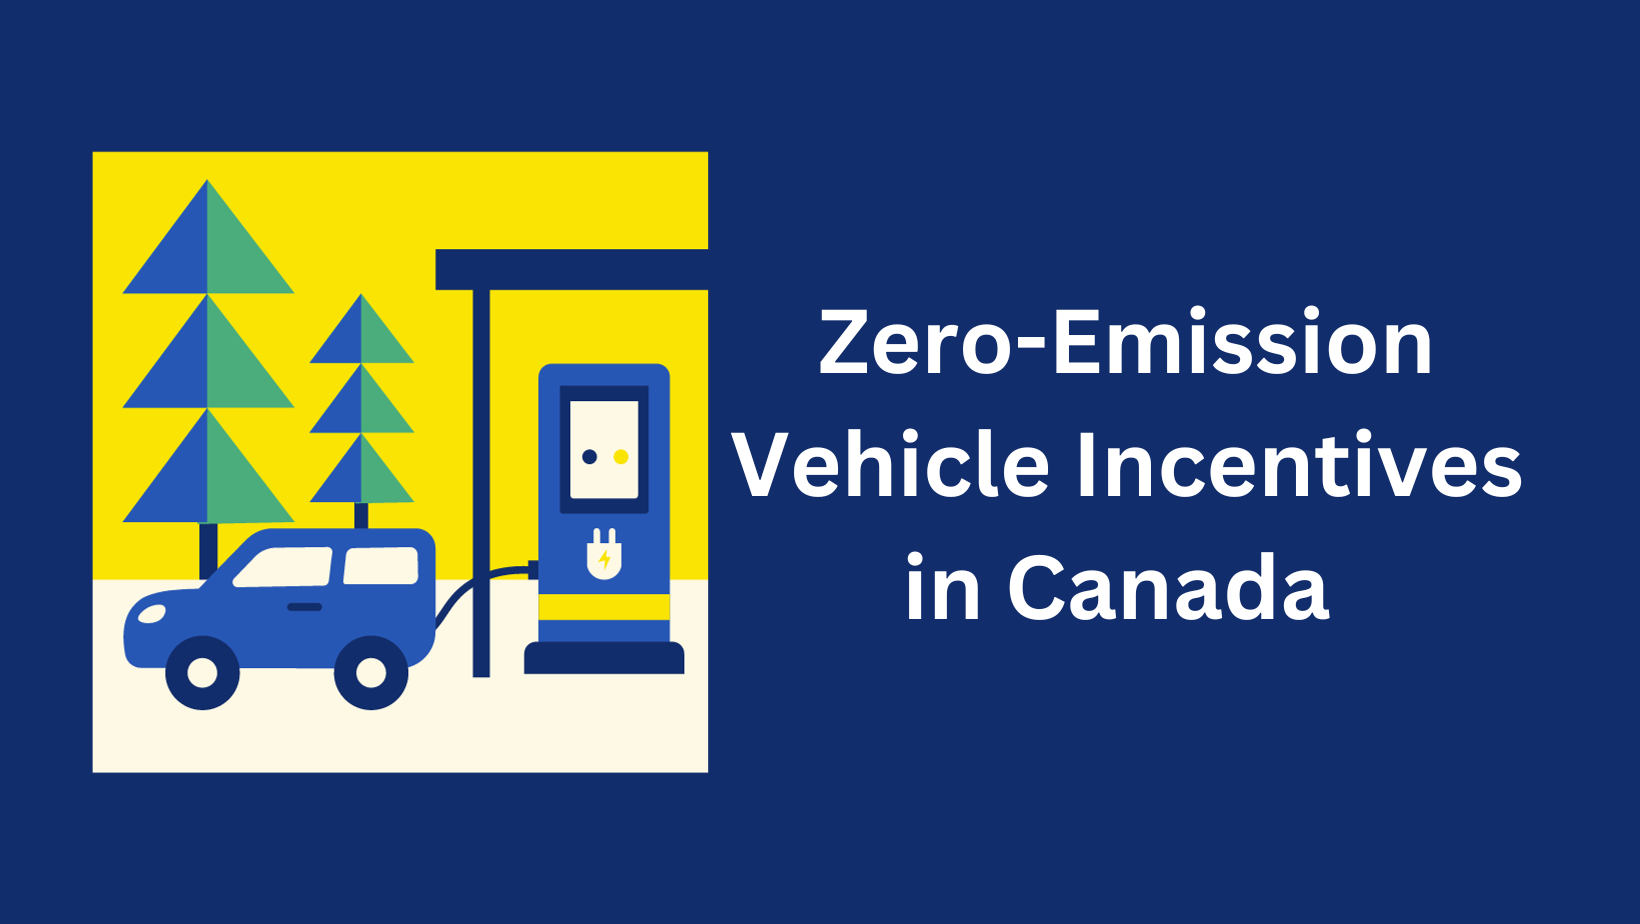 Zero-Emission Vehicle Incentives